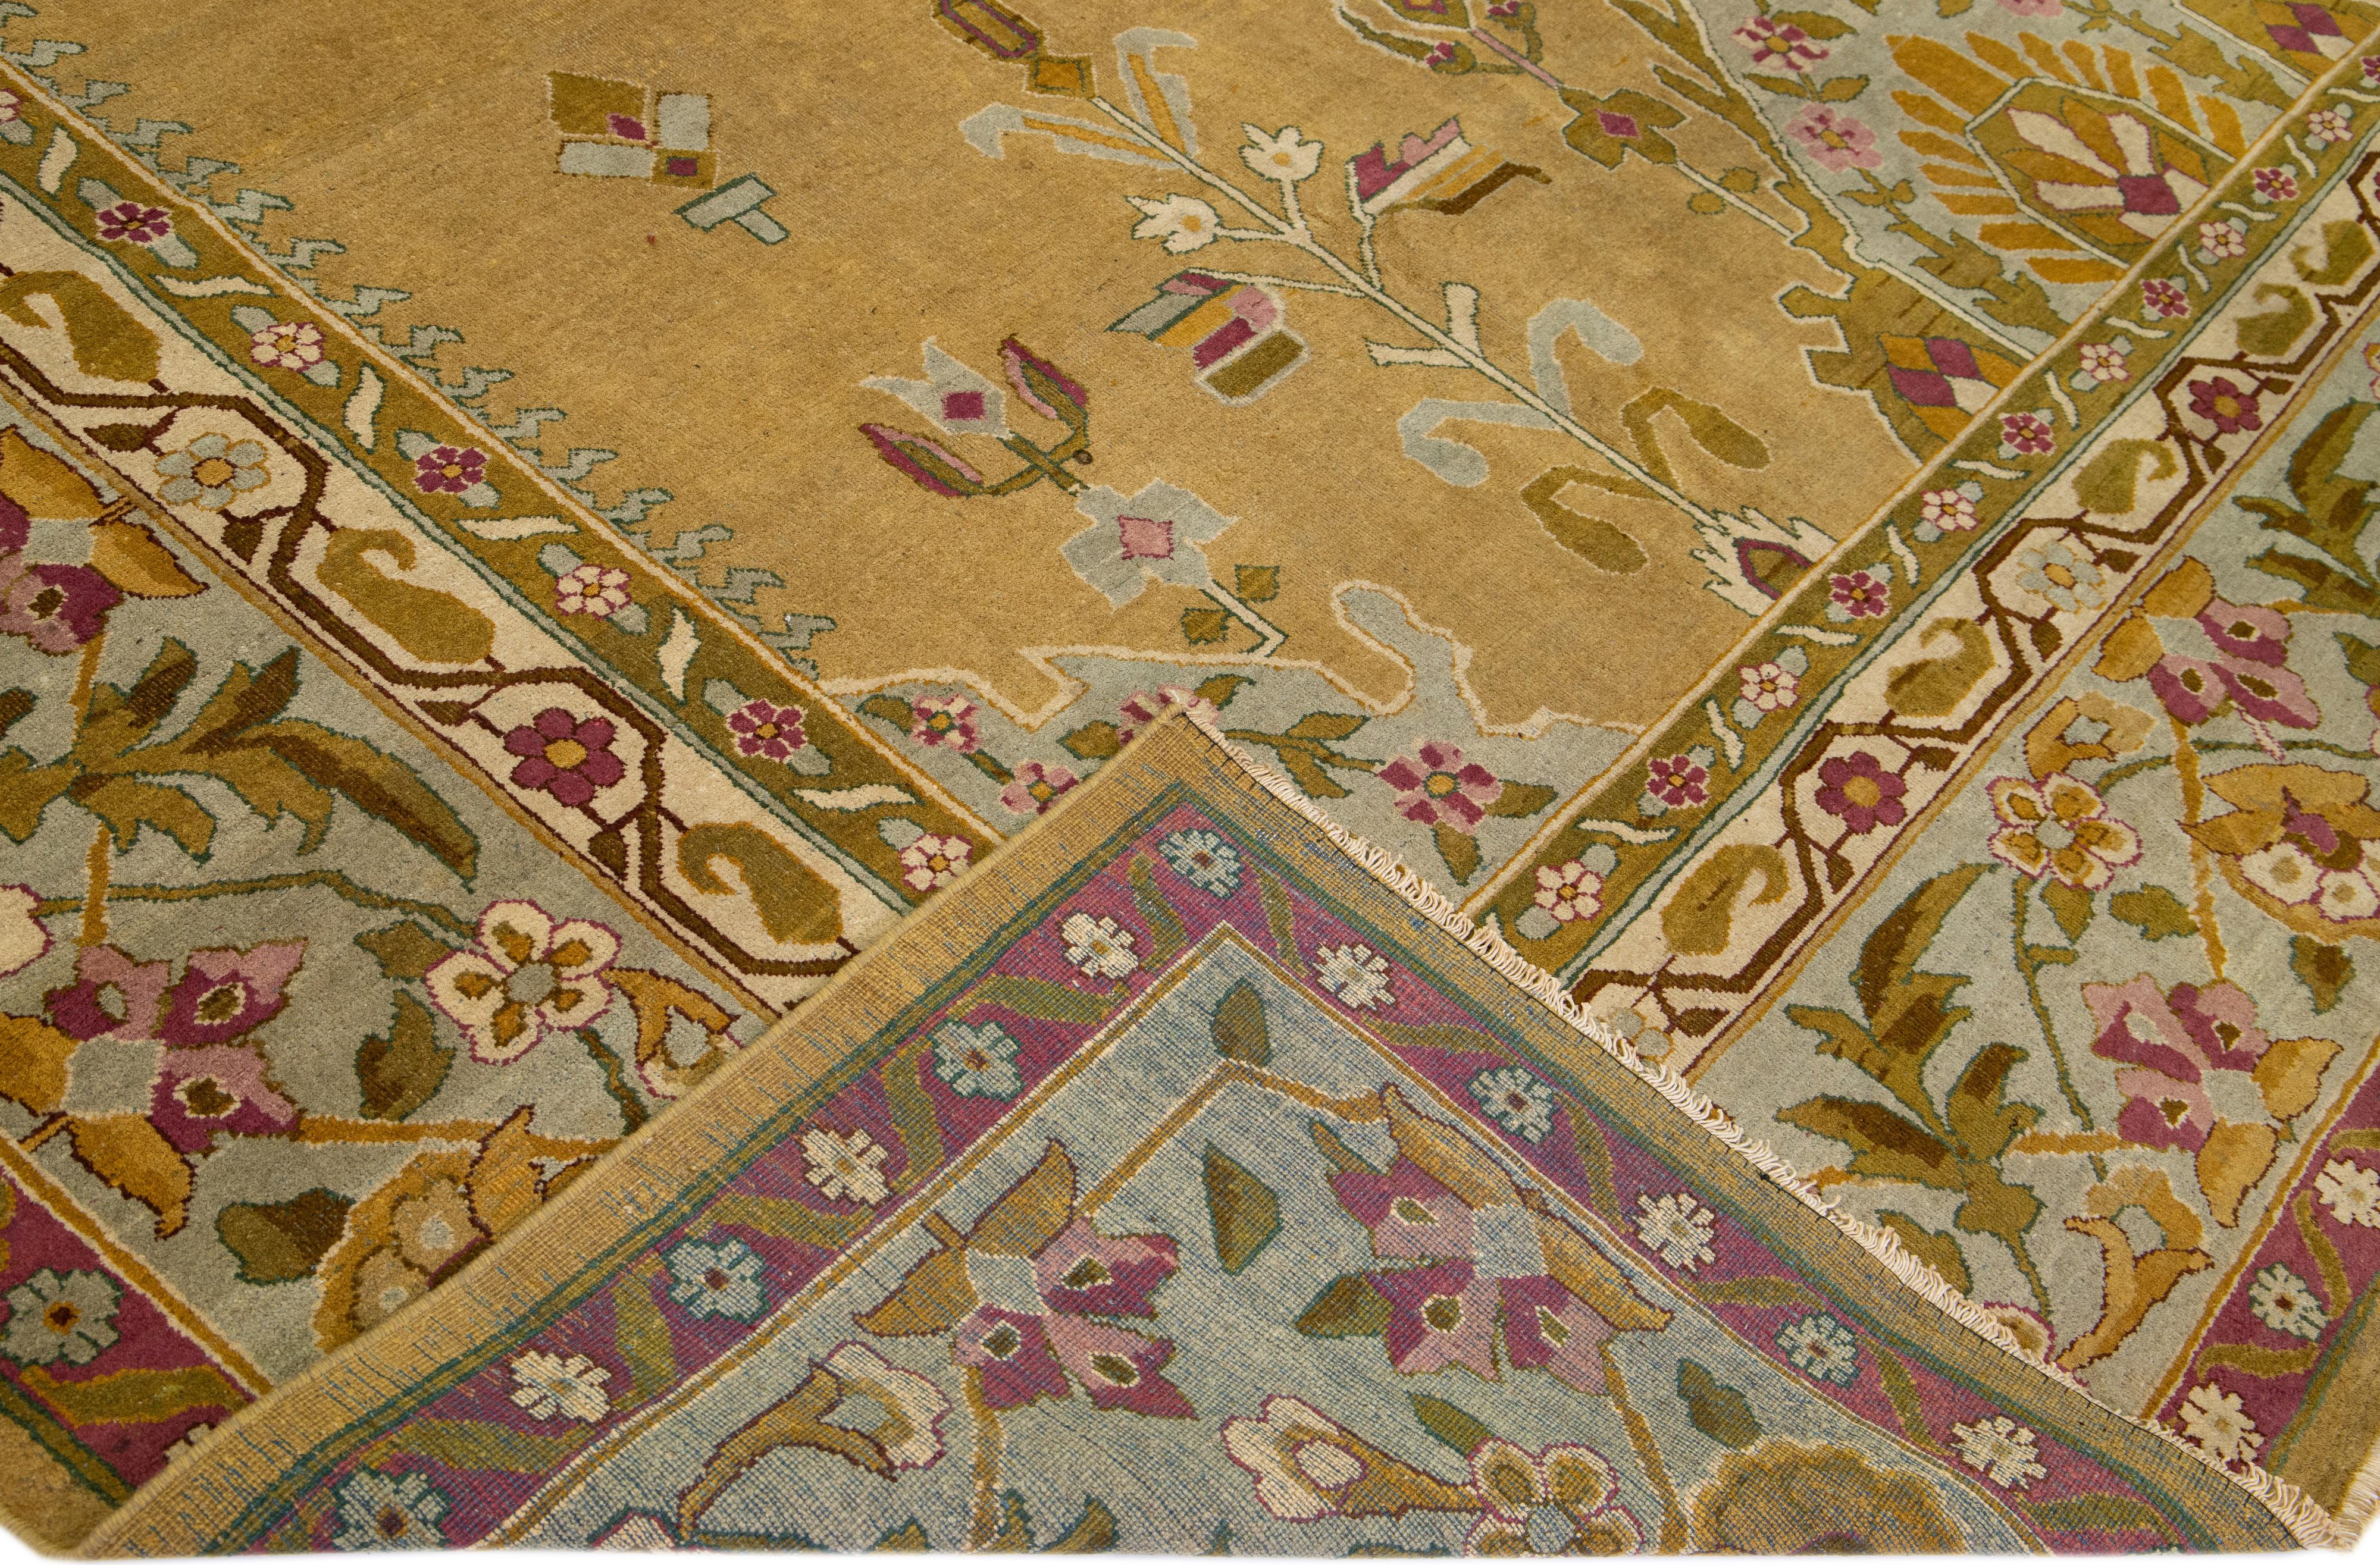 Magnifique tapis antique Agra en laine nouée à la main avec un champ de verge d'or. Ce tapis indien présente des accents multicolores dans un magnifique motif floral en médaillon.

Ce tapis mesure : 14'2